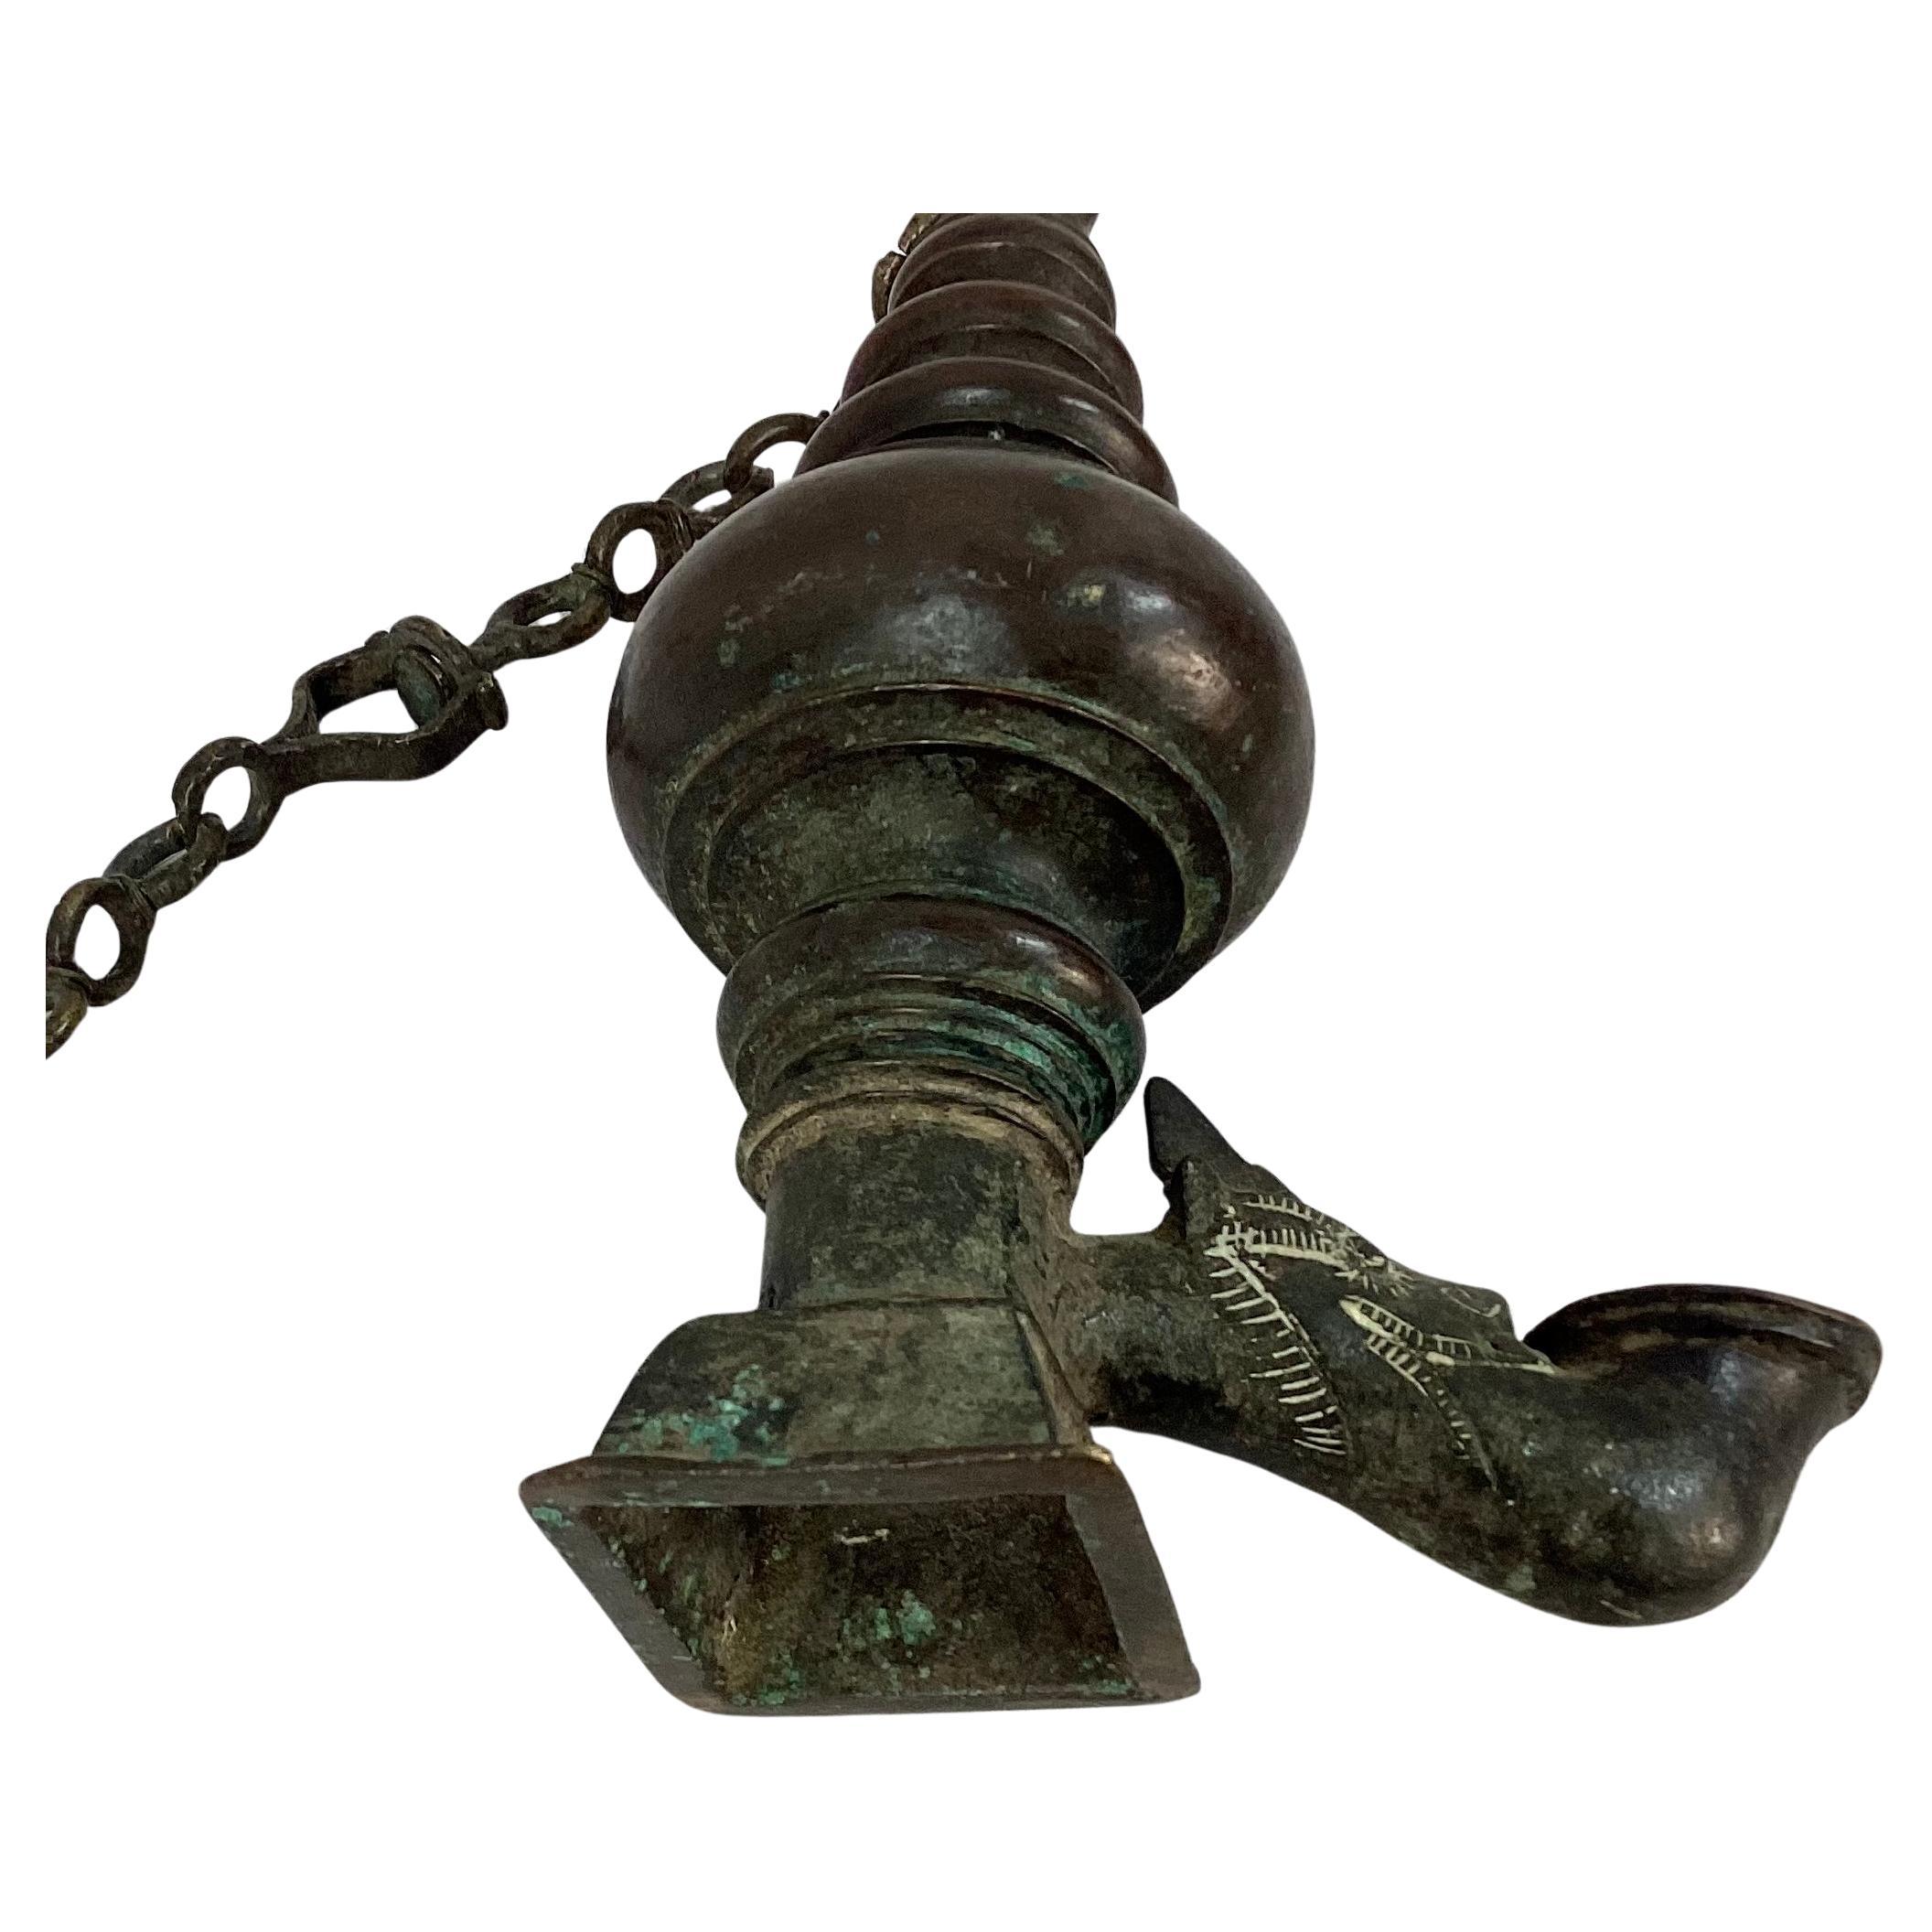 Sri Lankische hängende Bronze-Öllampe des 18. Jahrhunderts mit Makara-Kopfausguss. Massive Bronze. Kann aufgehängt oder als eigenständiges Dekorationselement verwendet werden. Ein großartiges Stück, das zu jeder Einrichtung passt.  Die angegebenen